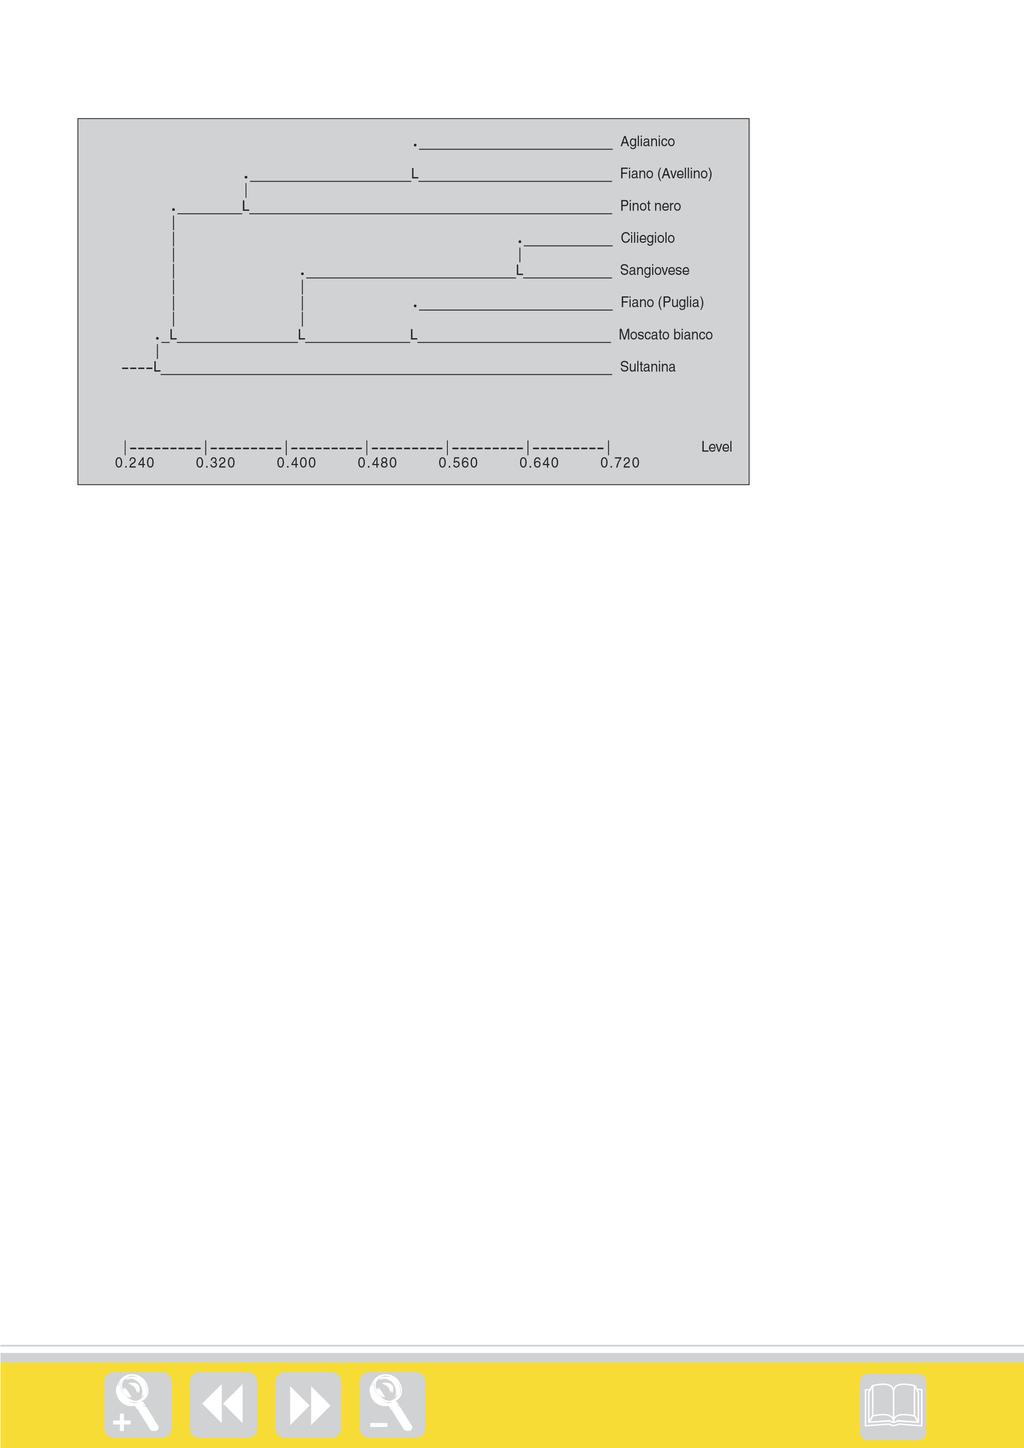 Fig. 5 - Dendrogramma di similarità genetica zionale sul Sangiovese, Firenze, 8-10 marzo. Calò A., Costacurta A., Crespan M., Milani N., Aggio L., Carraro R., Di Stefano R., Ummarino I., 2001.